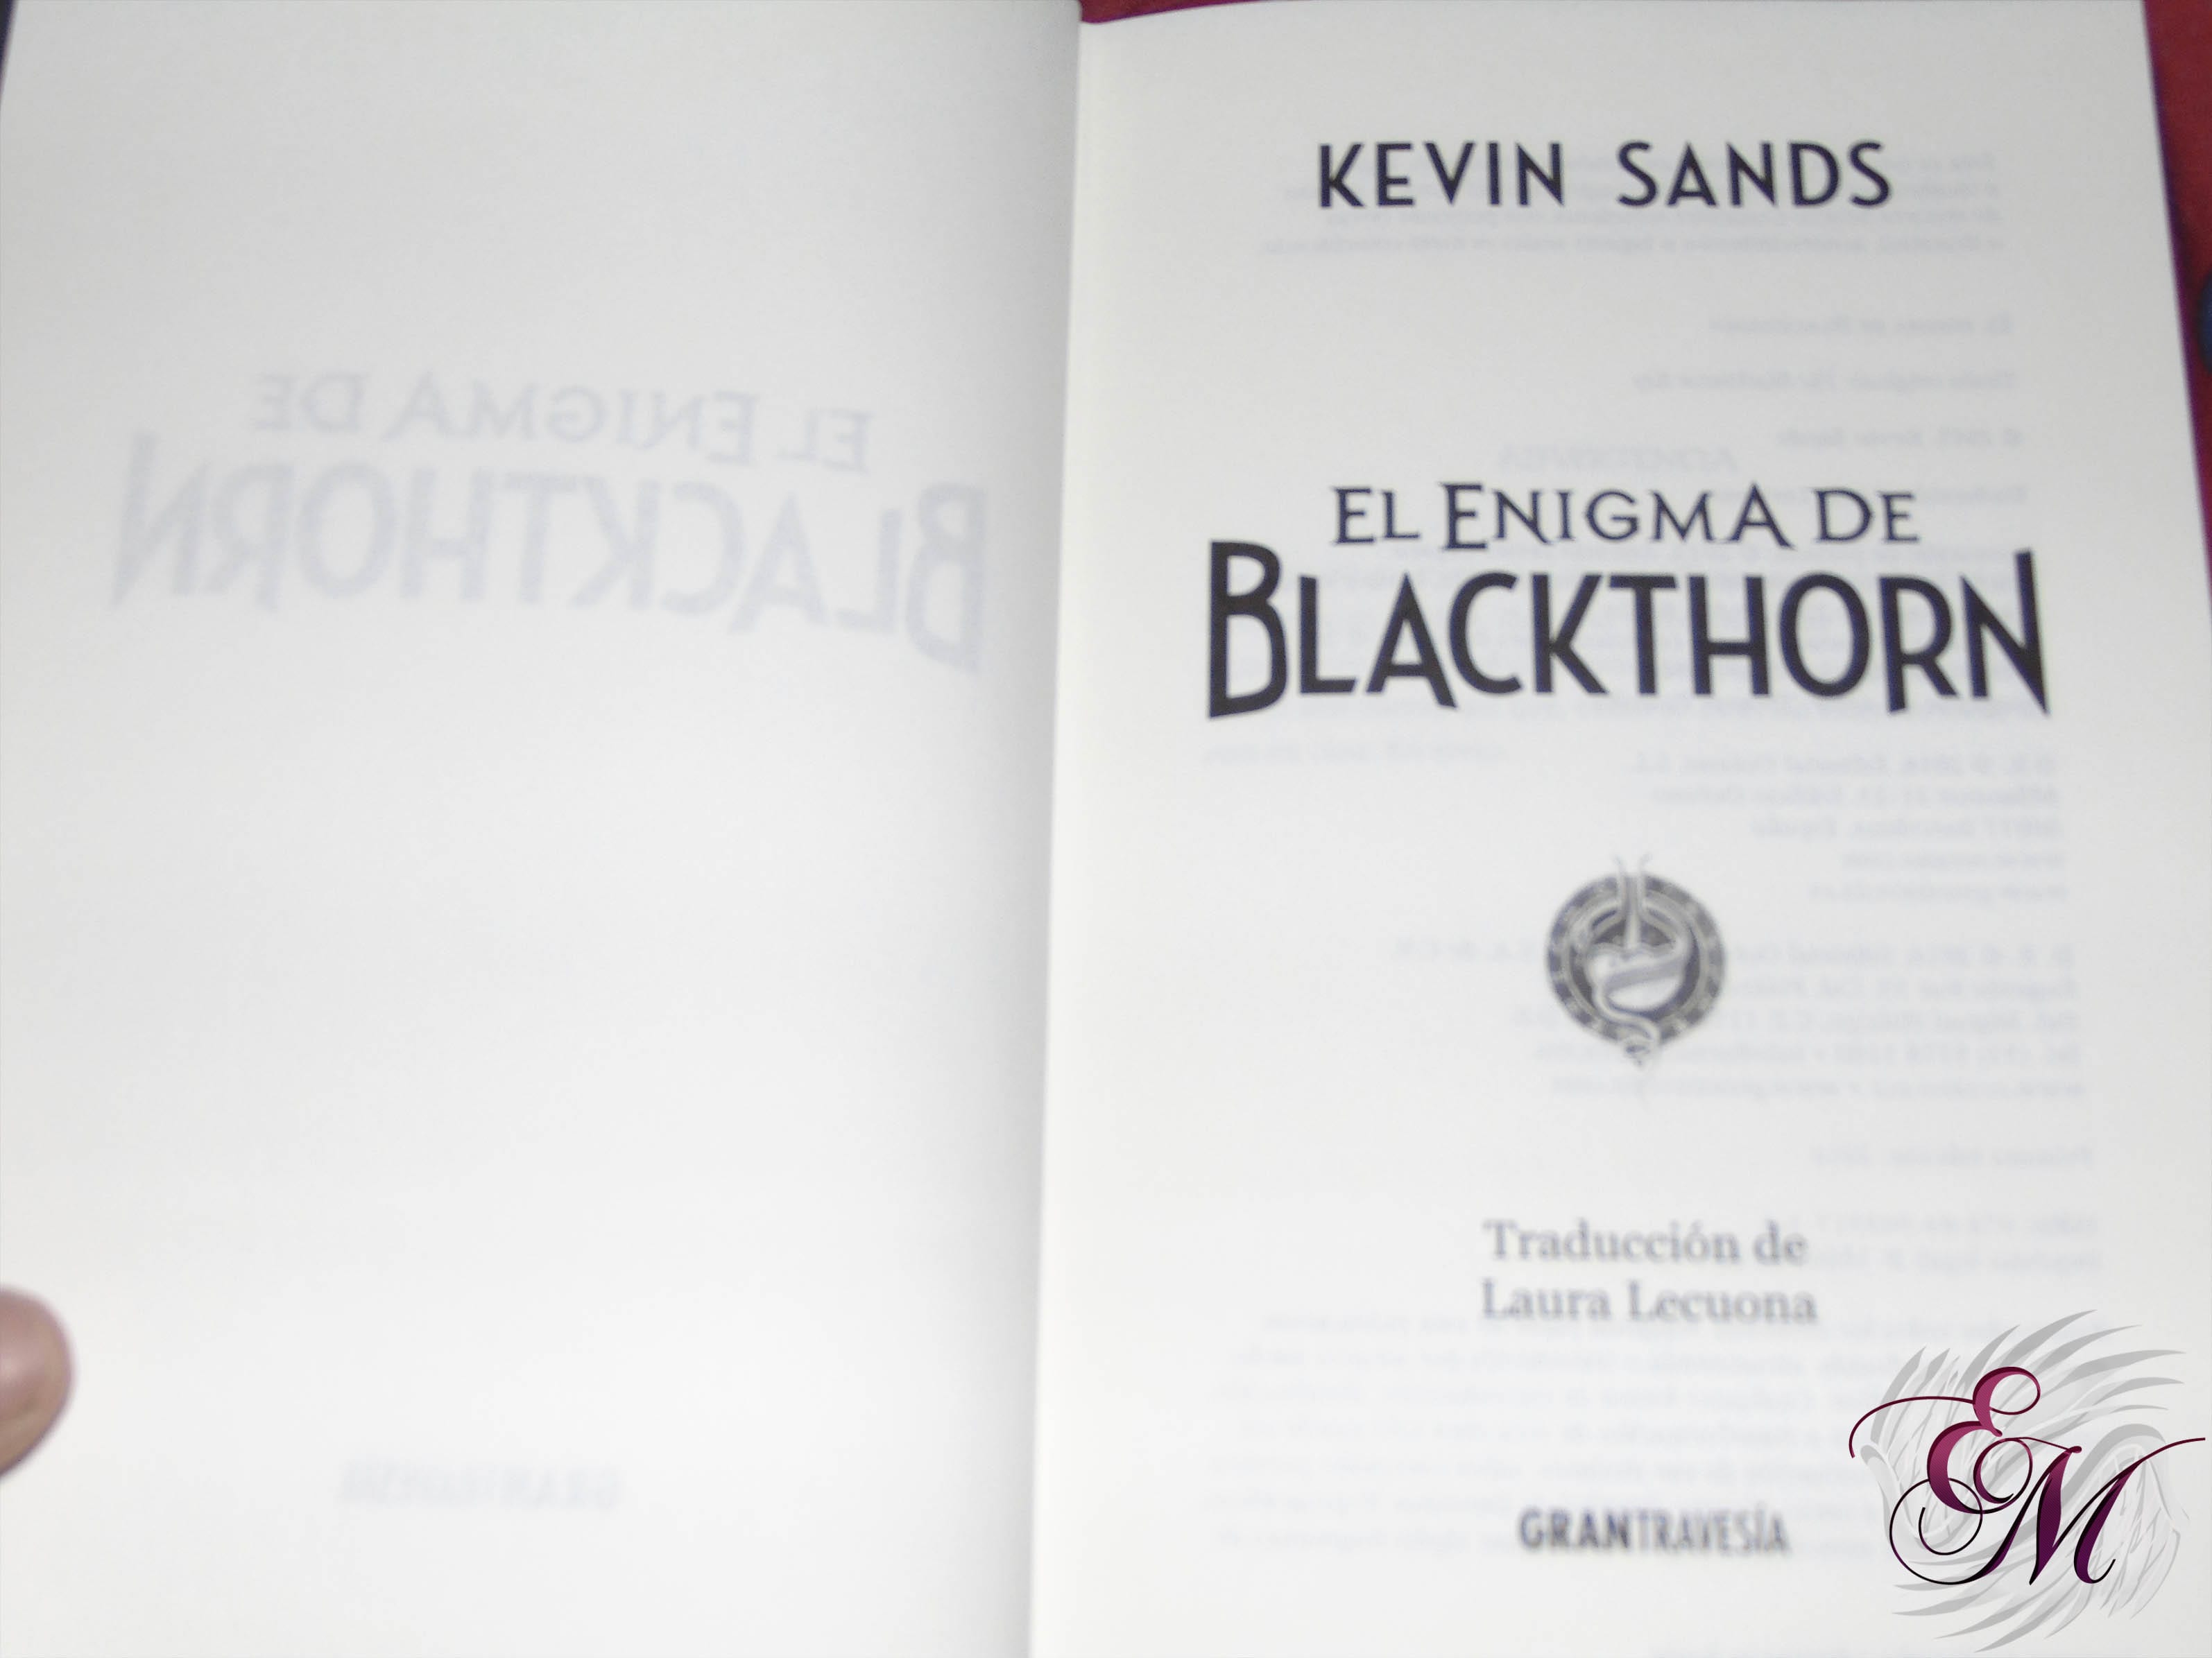 El enigma de blackthorn, de Kevin Sands - Reseña